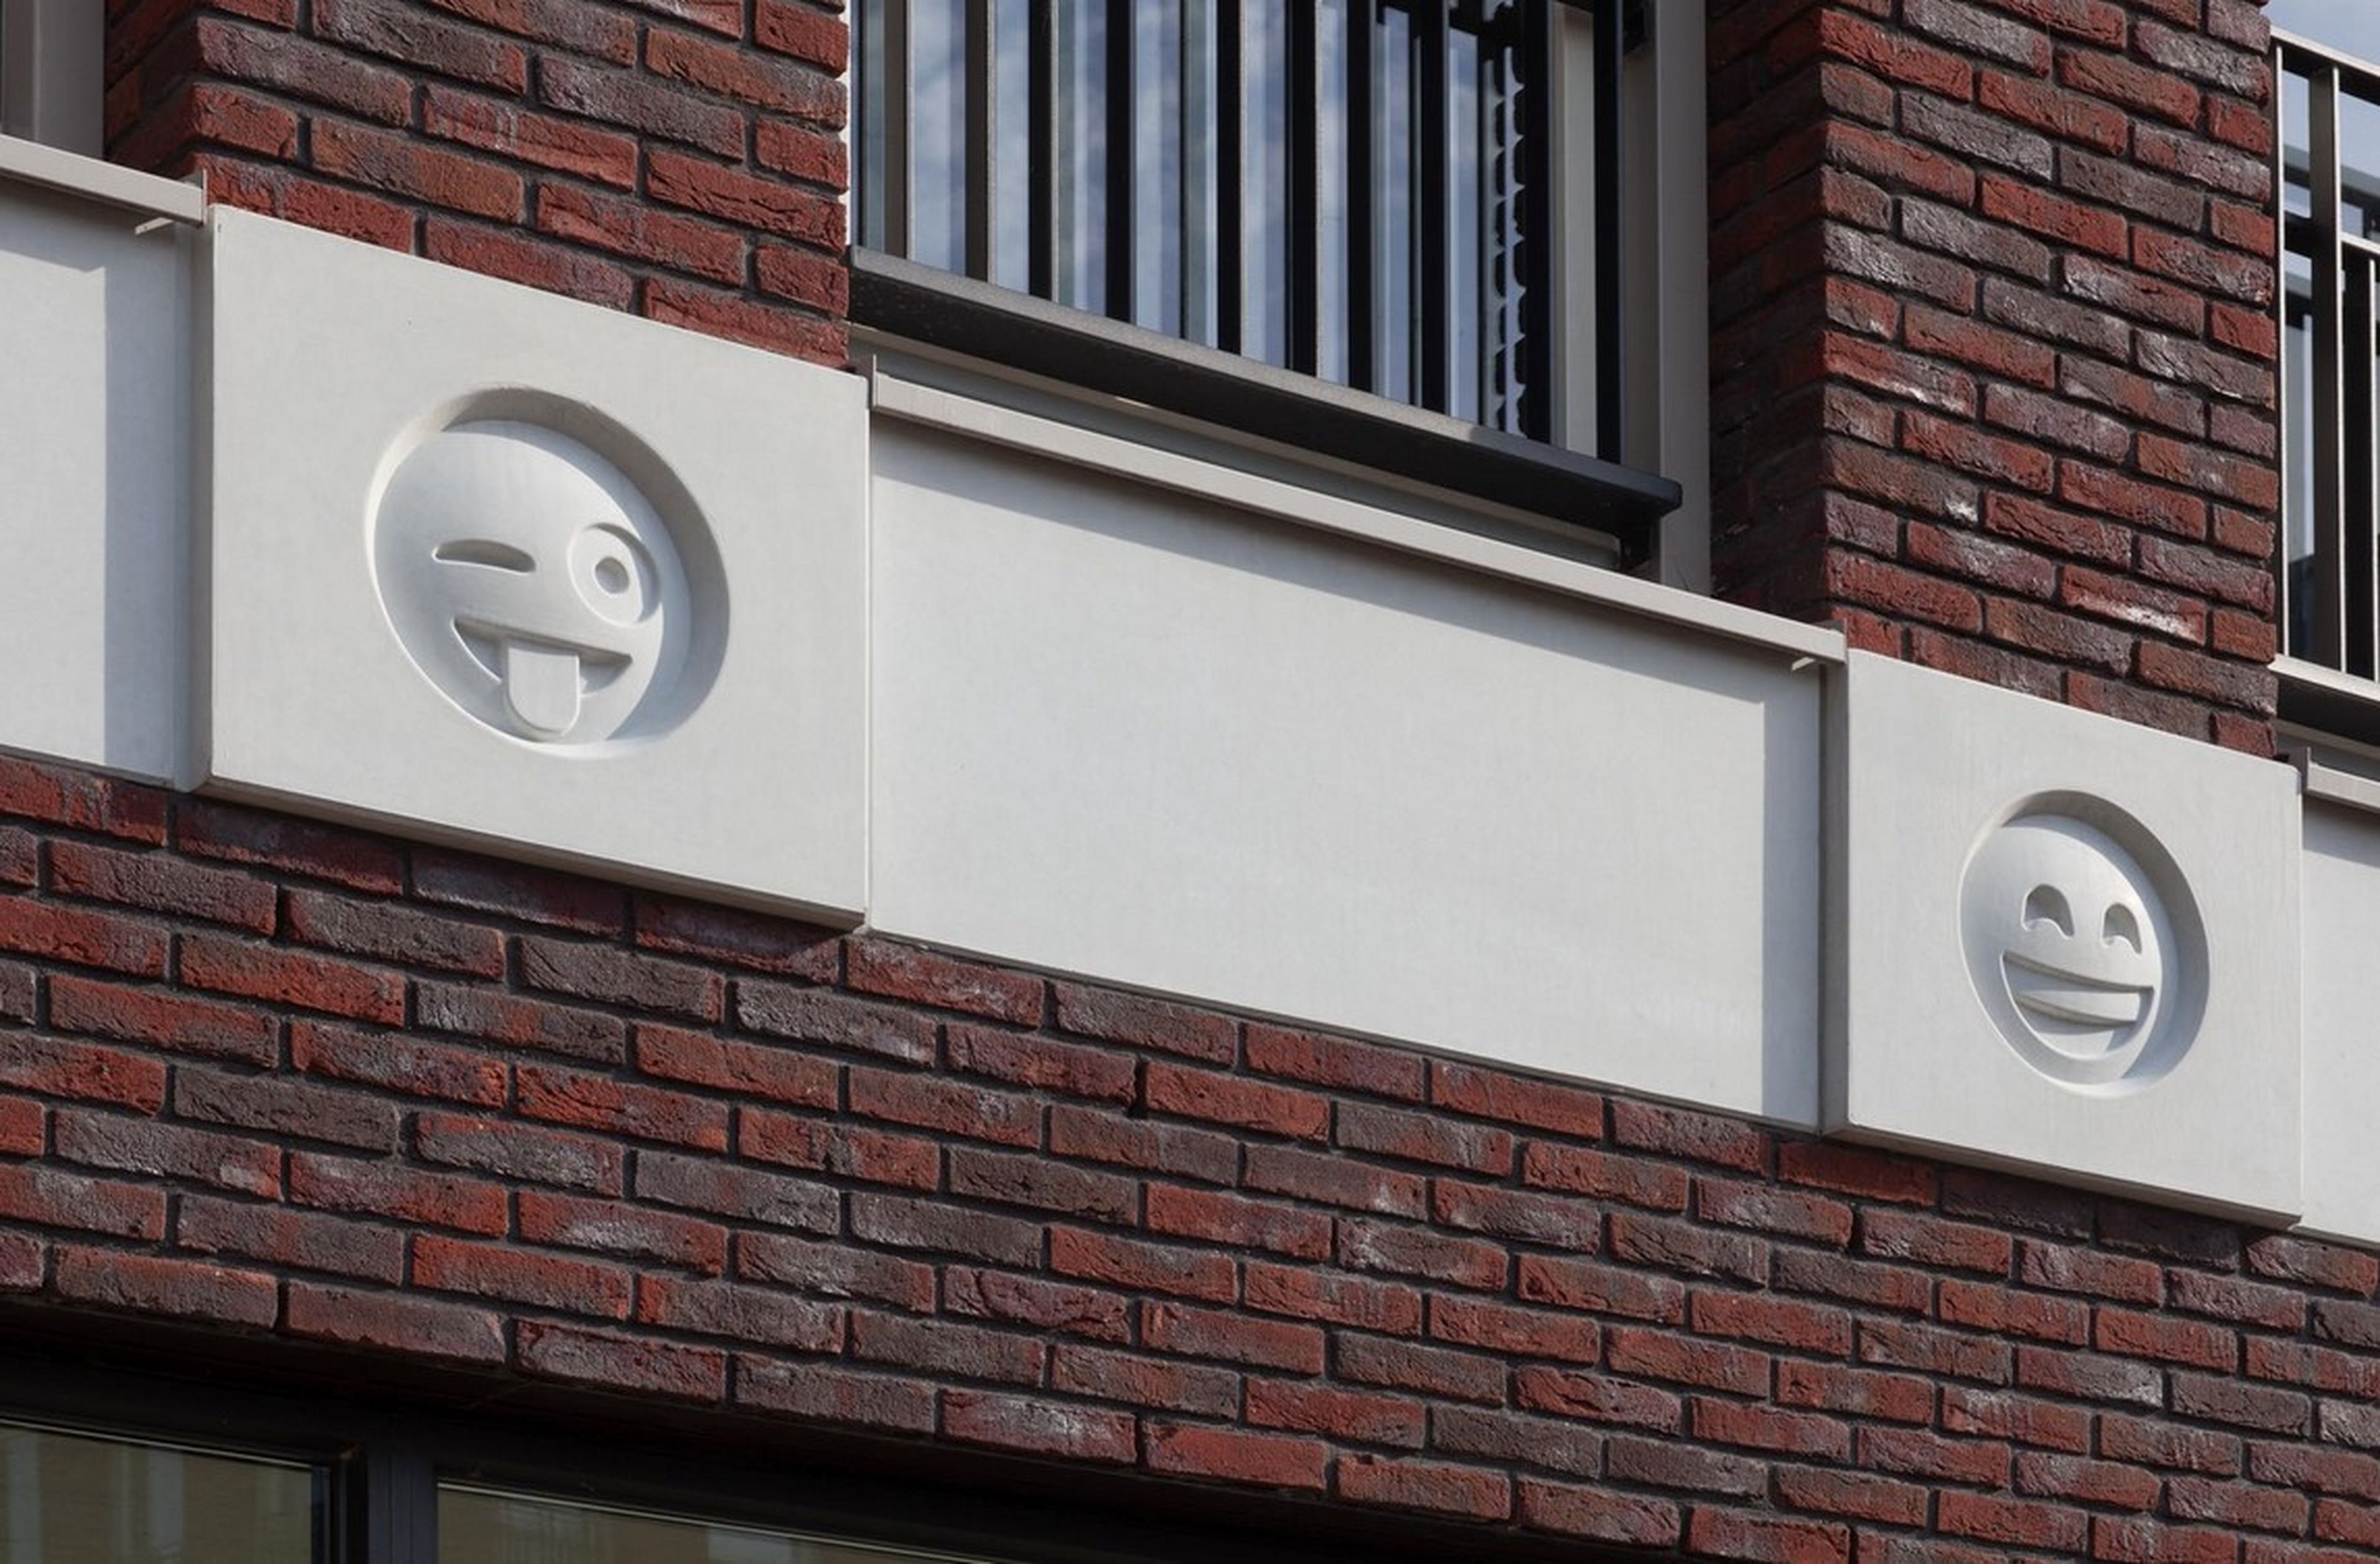 Polémica porque un arquitecto ha cambiado las gárgolas de un edificio por emojis